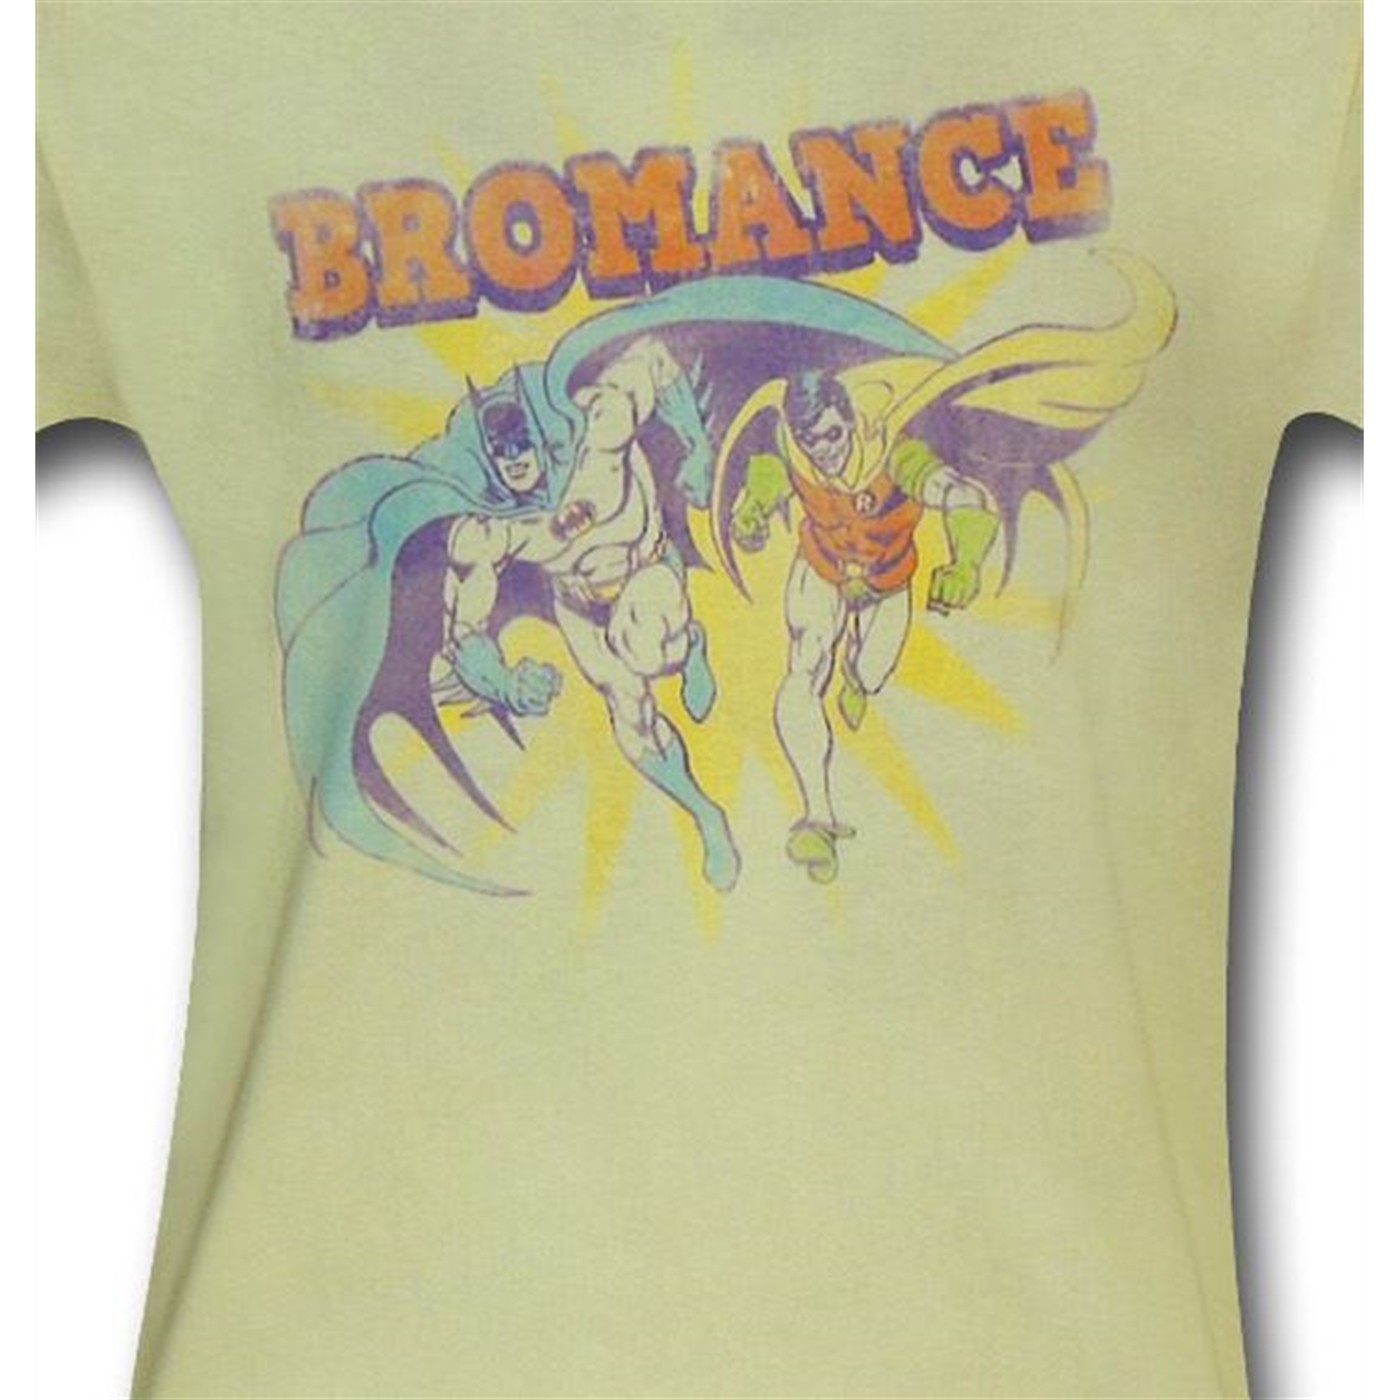 Batman and Robin Bromance T-Shirt